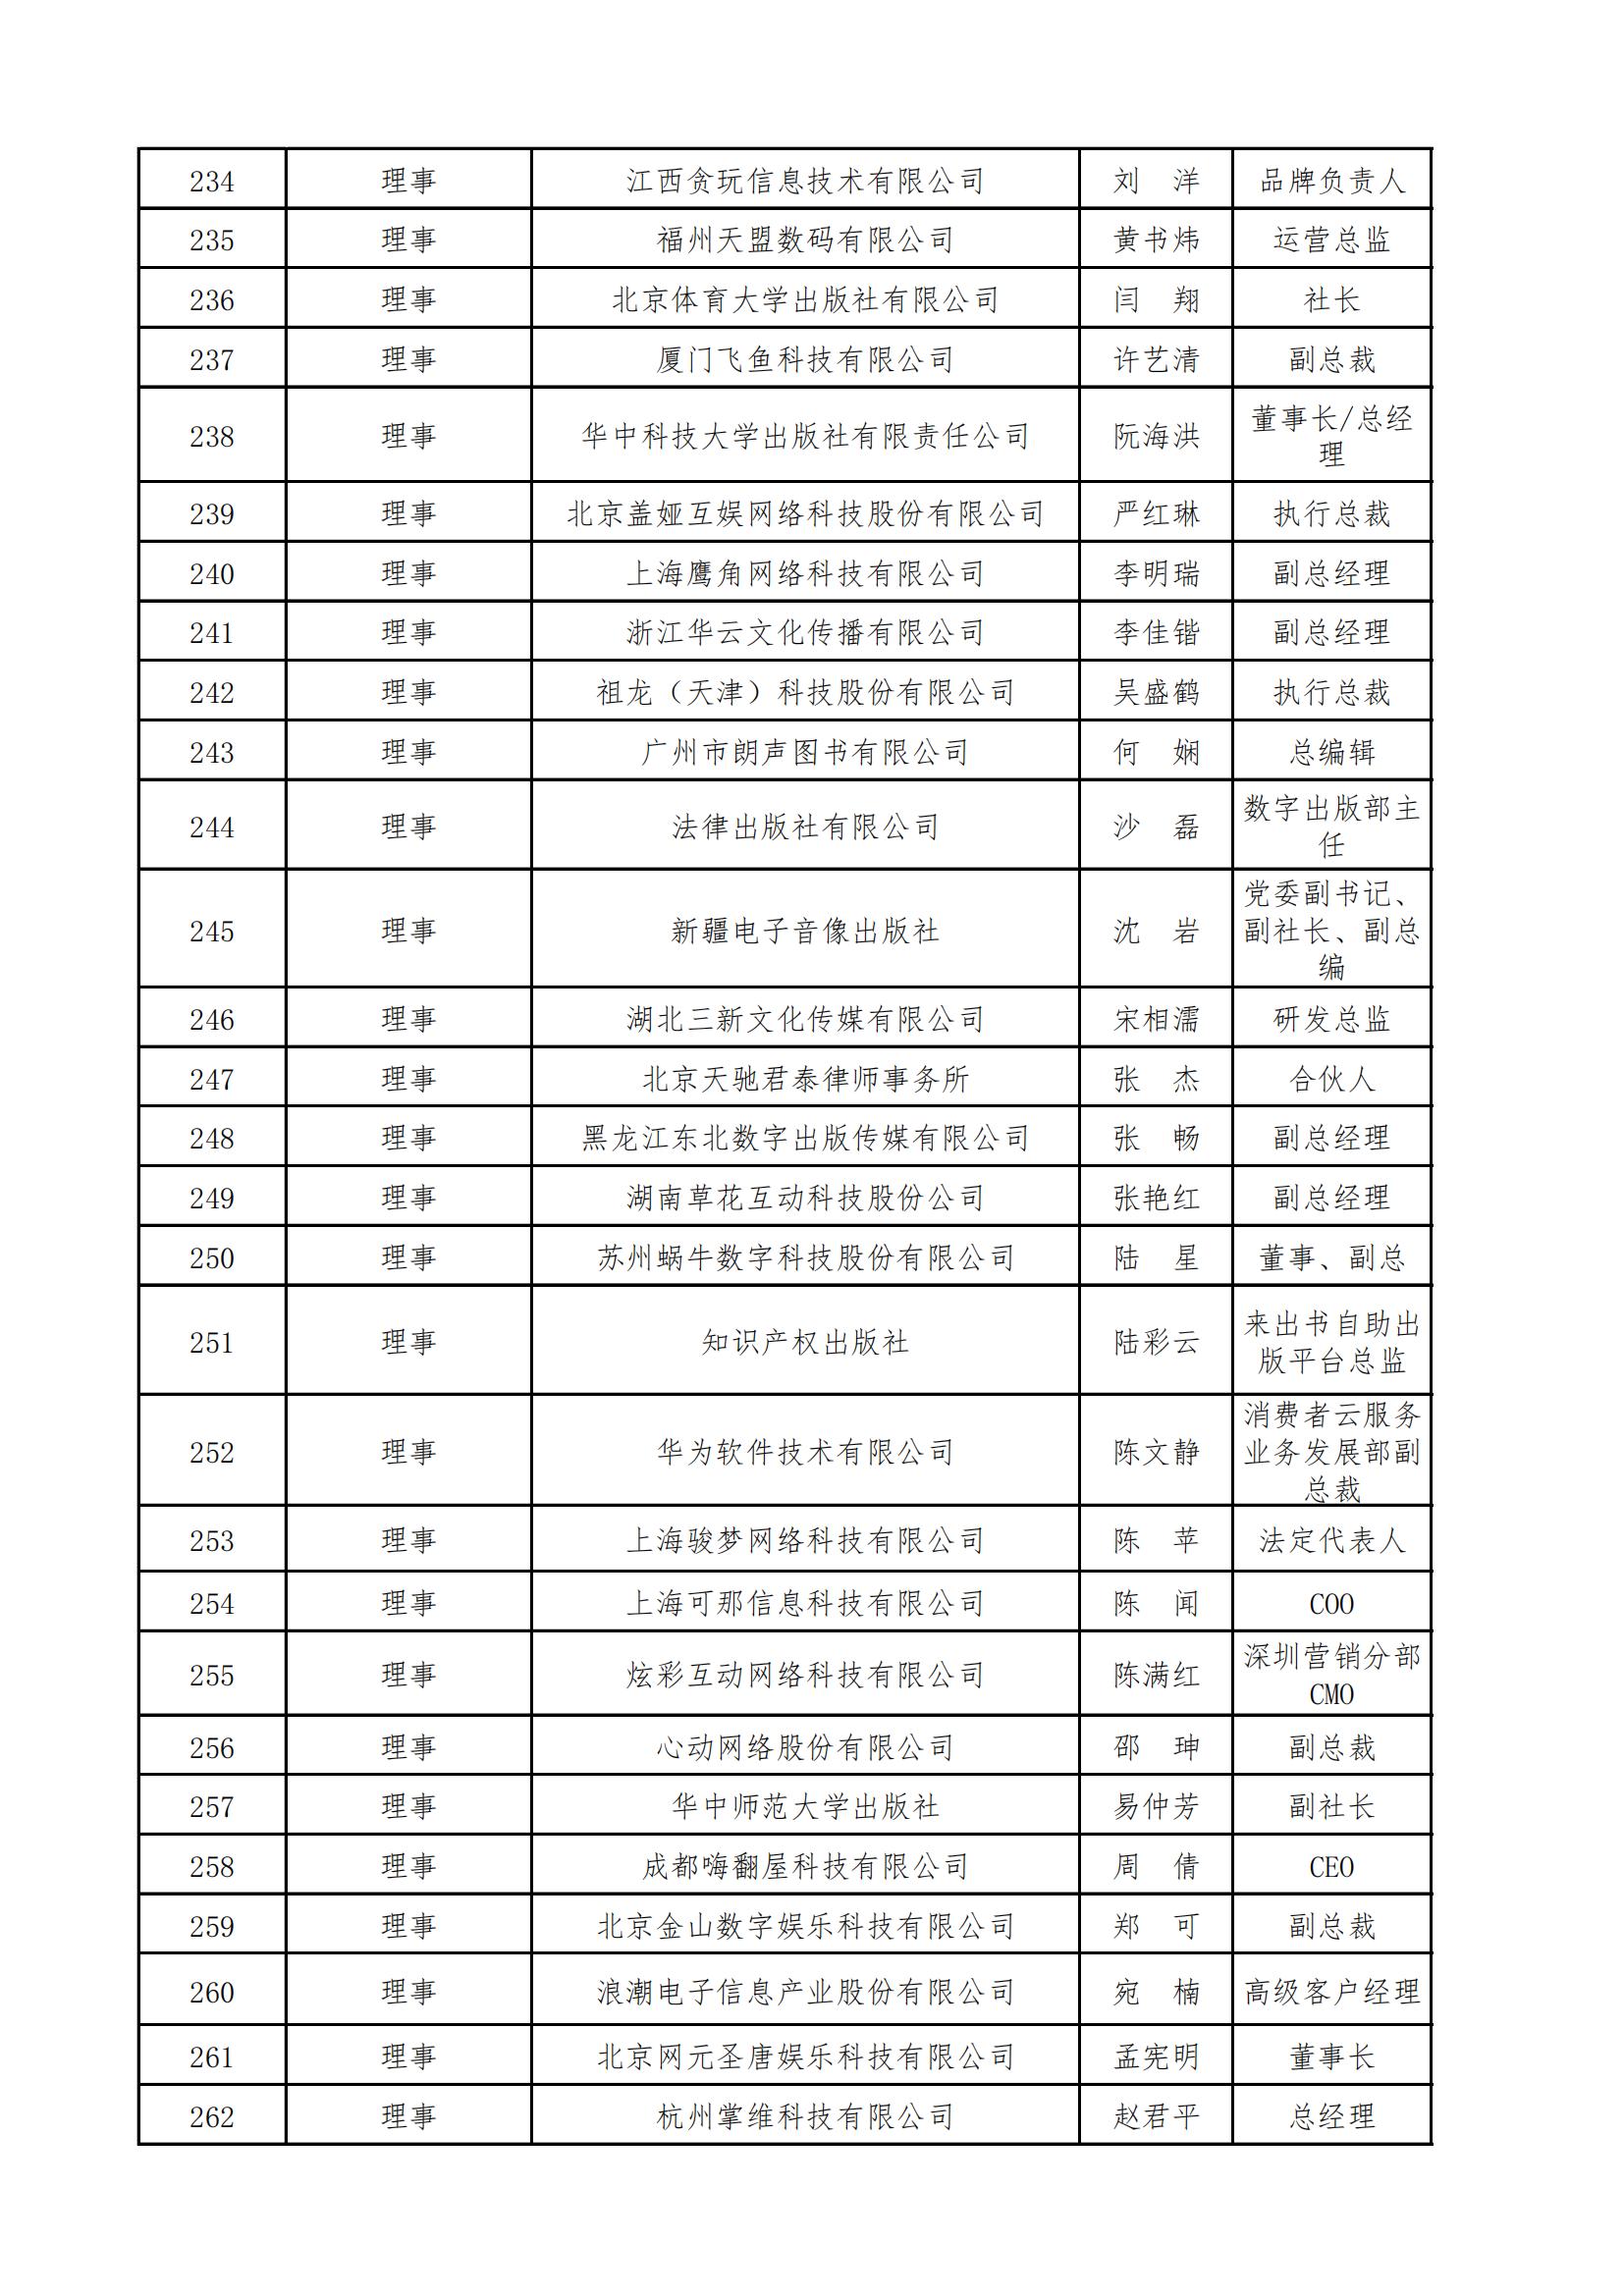 中国音像与数字出版协会第五届理事会名录_08.jpg